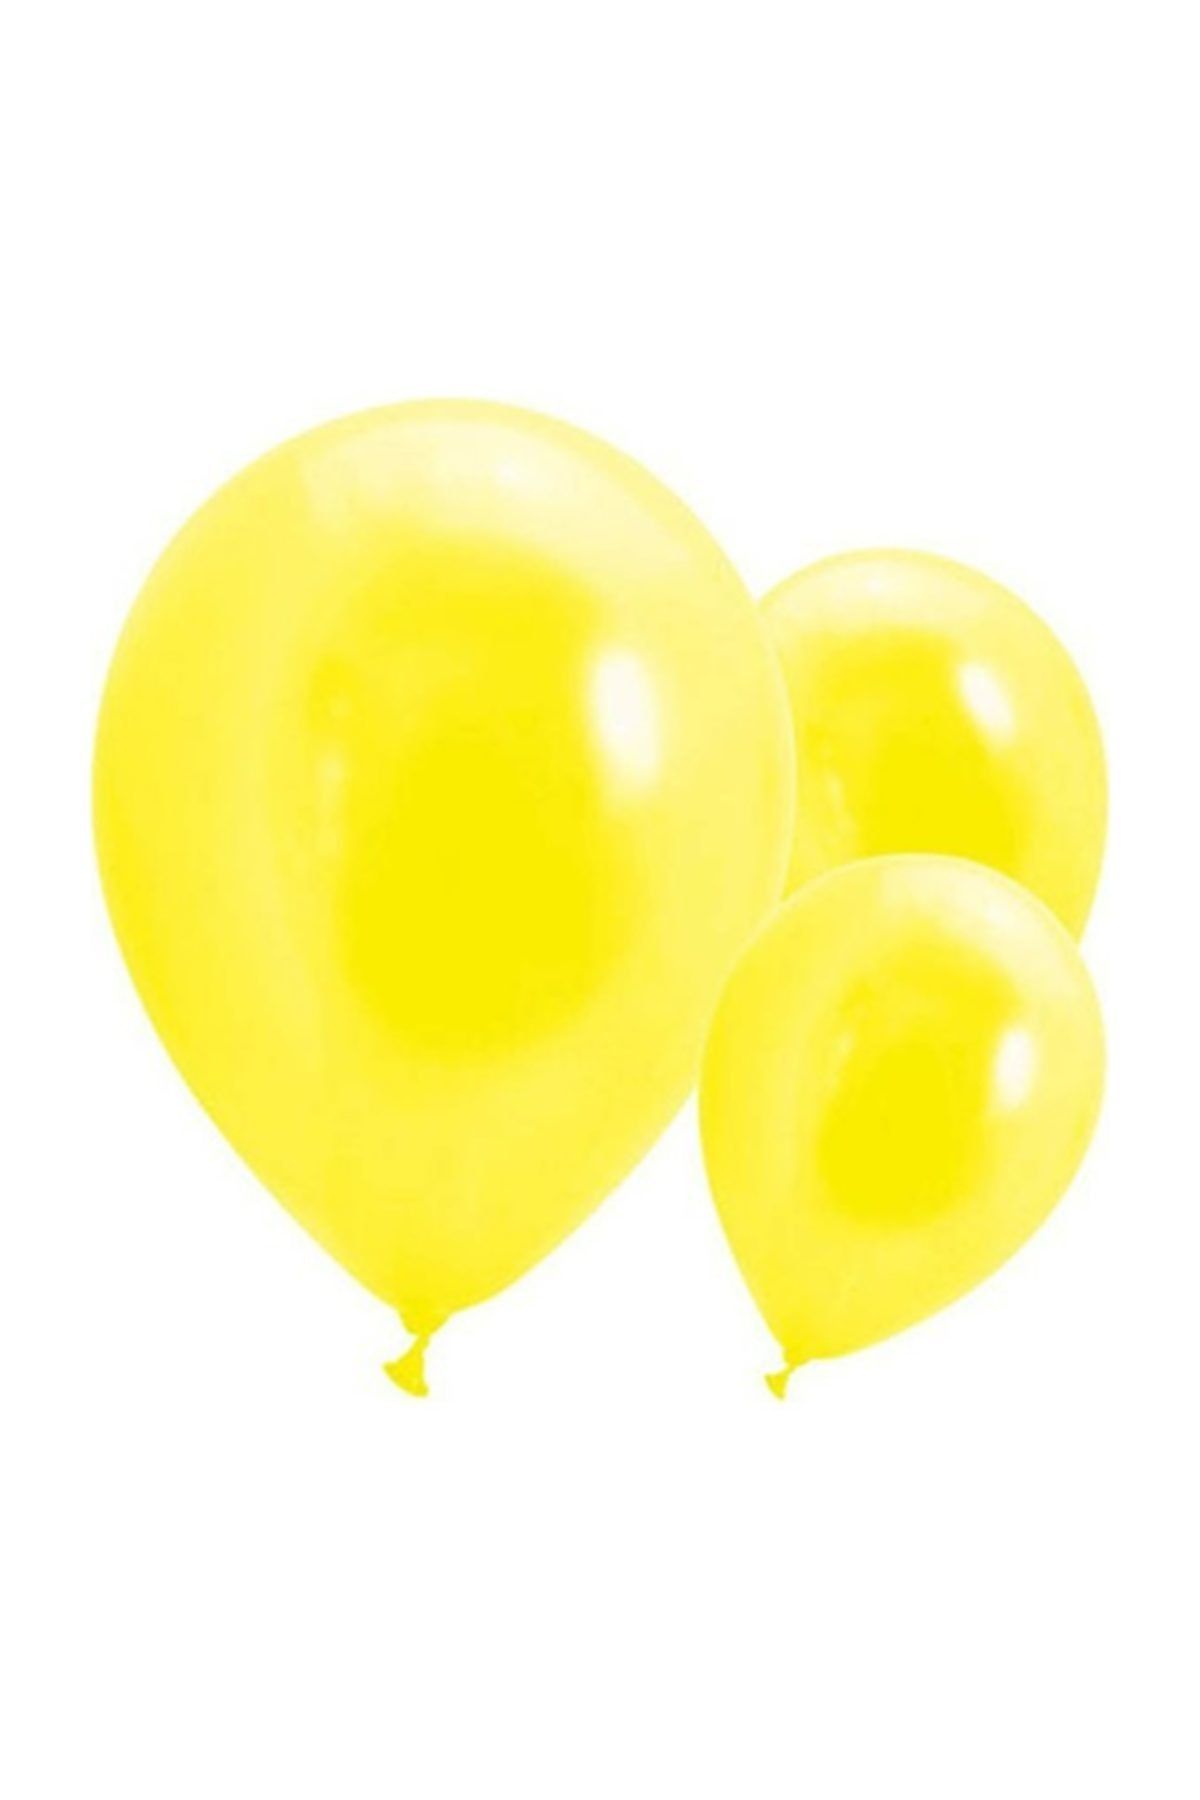 Cansüs Metalik Sarı Balon  50 Adet